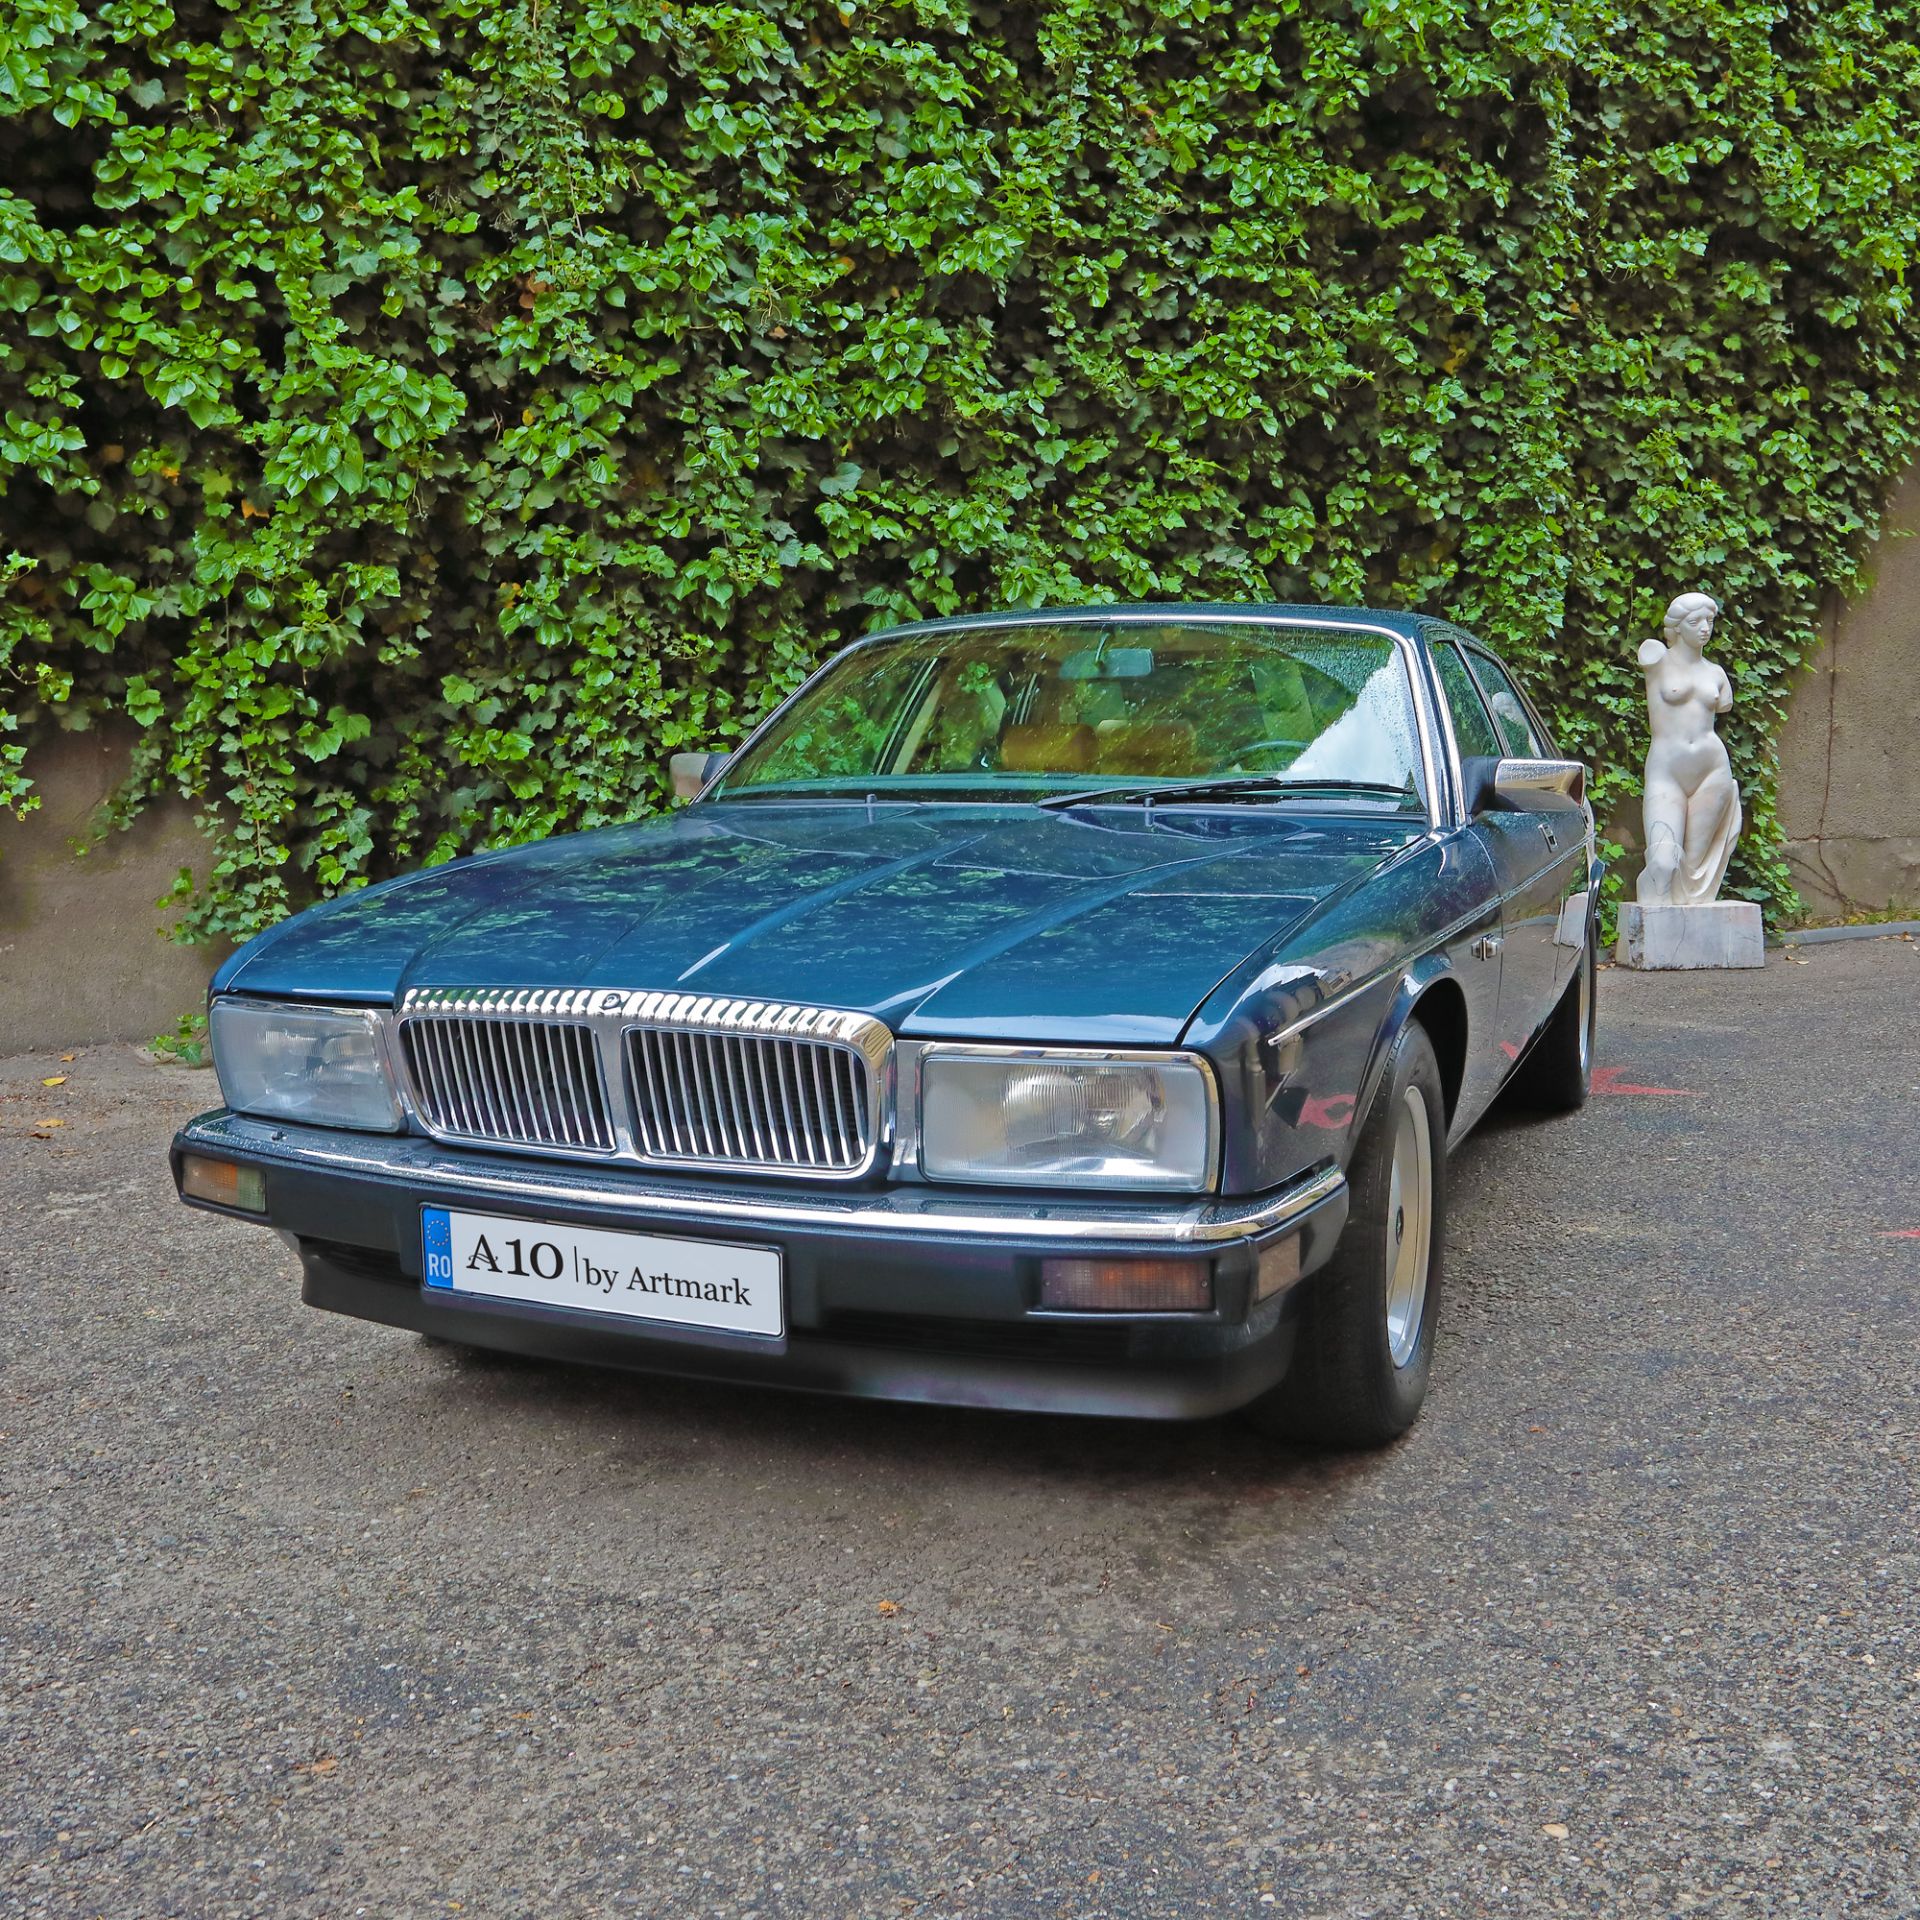 Jaguar XJ40 - Daimler, 1989